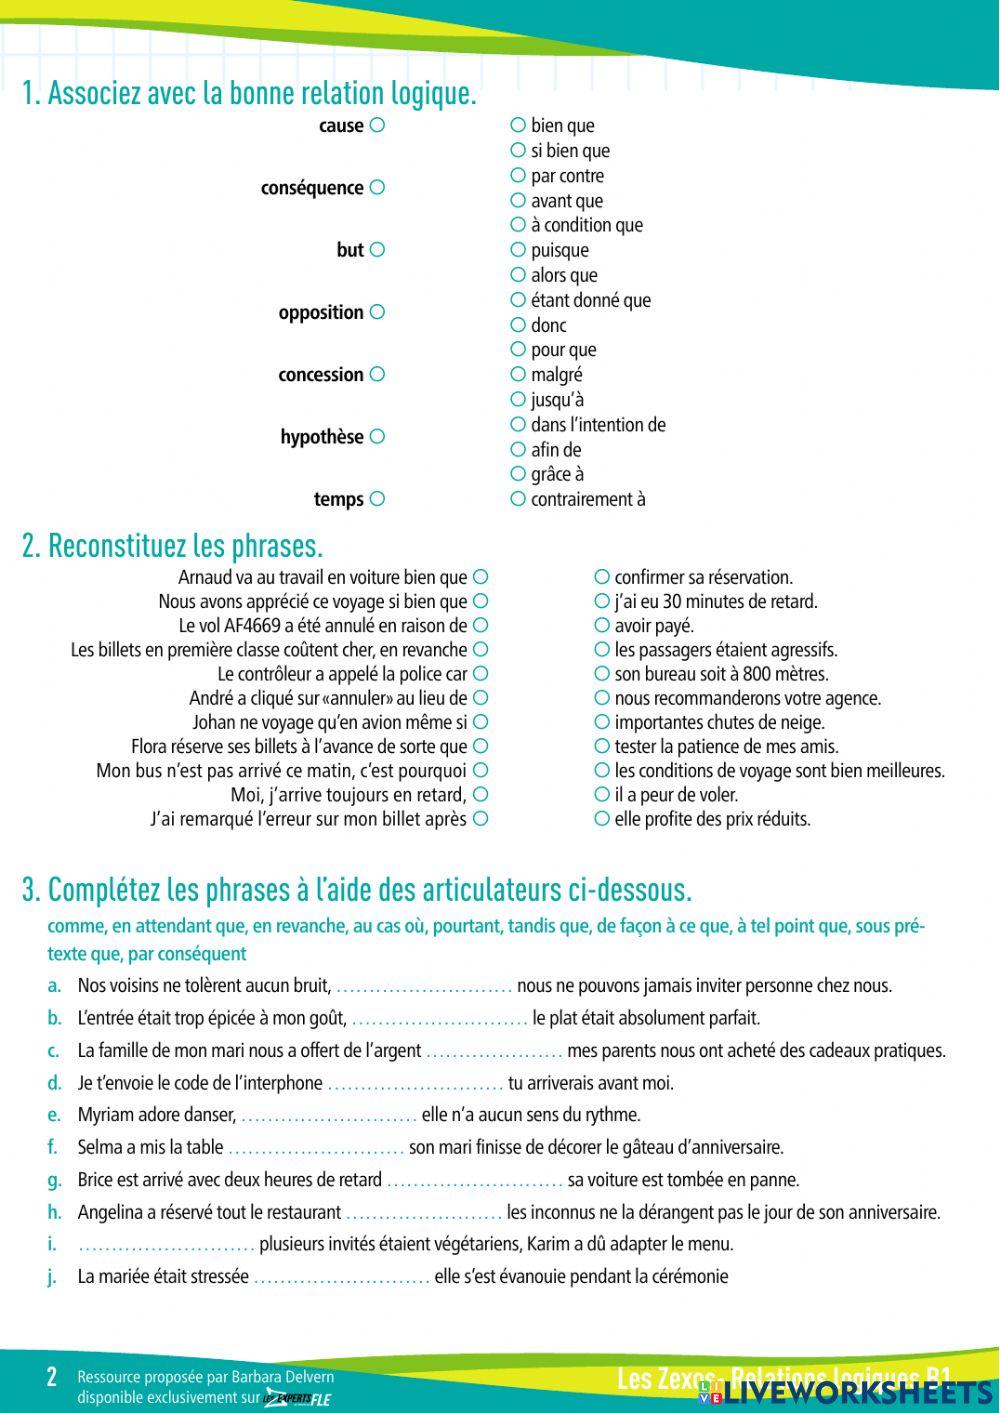 Test grammaire - relations logiques worksheet | Live Worksheets